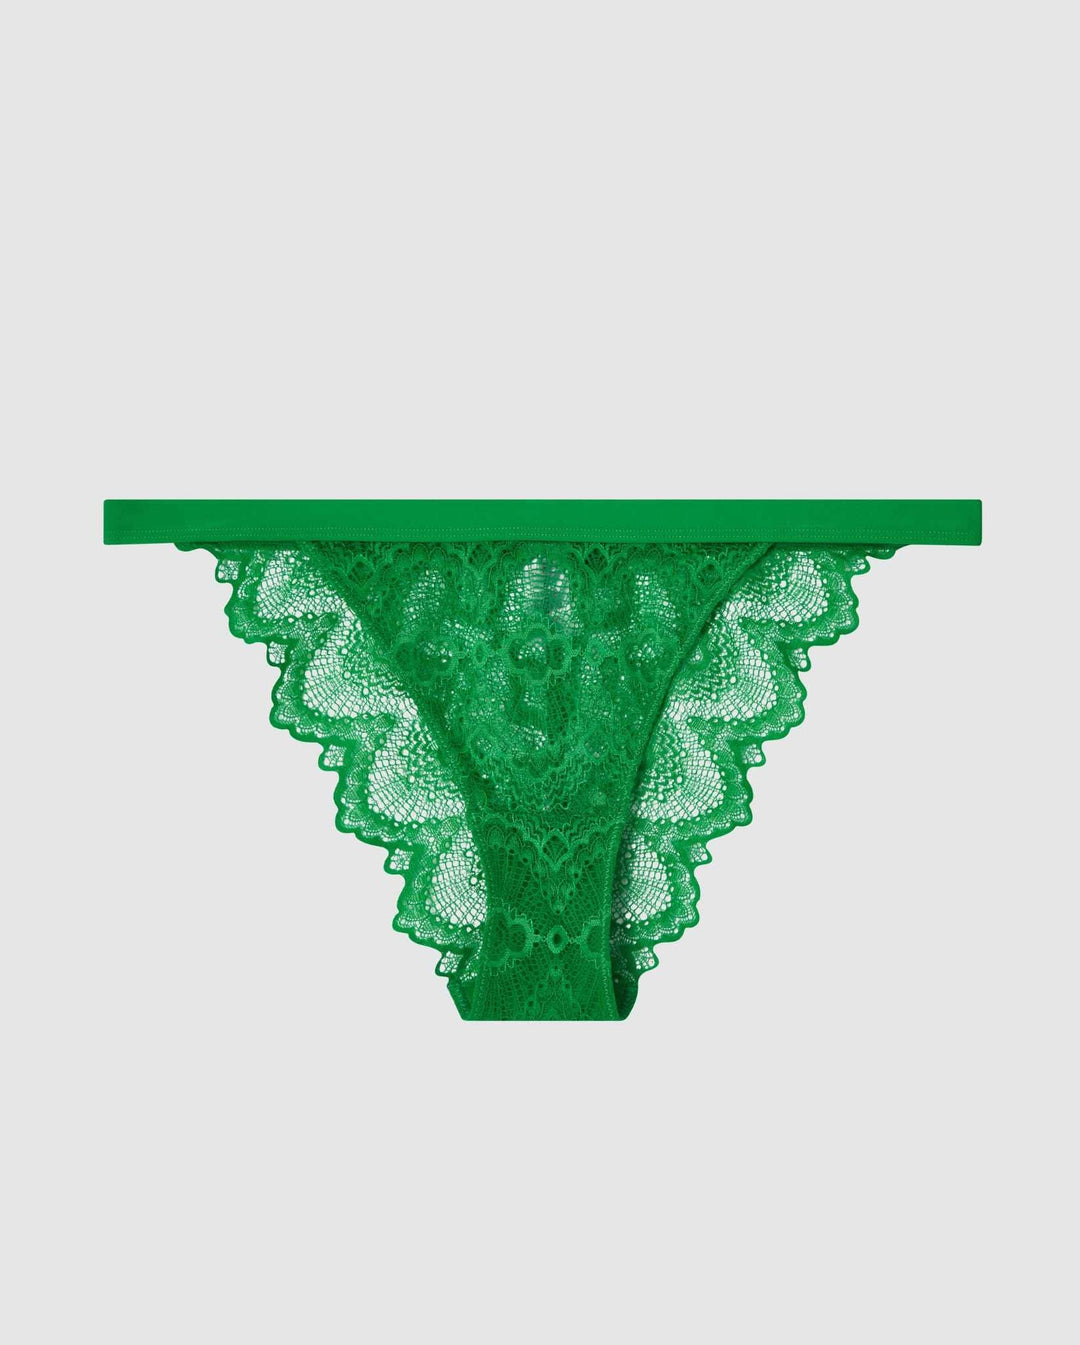 Lace Bikini Tanga Green Ivy